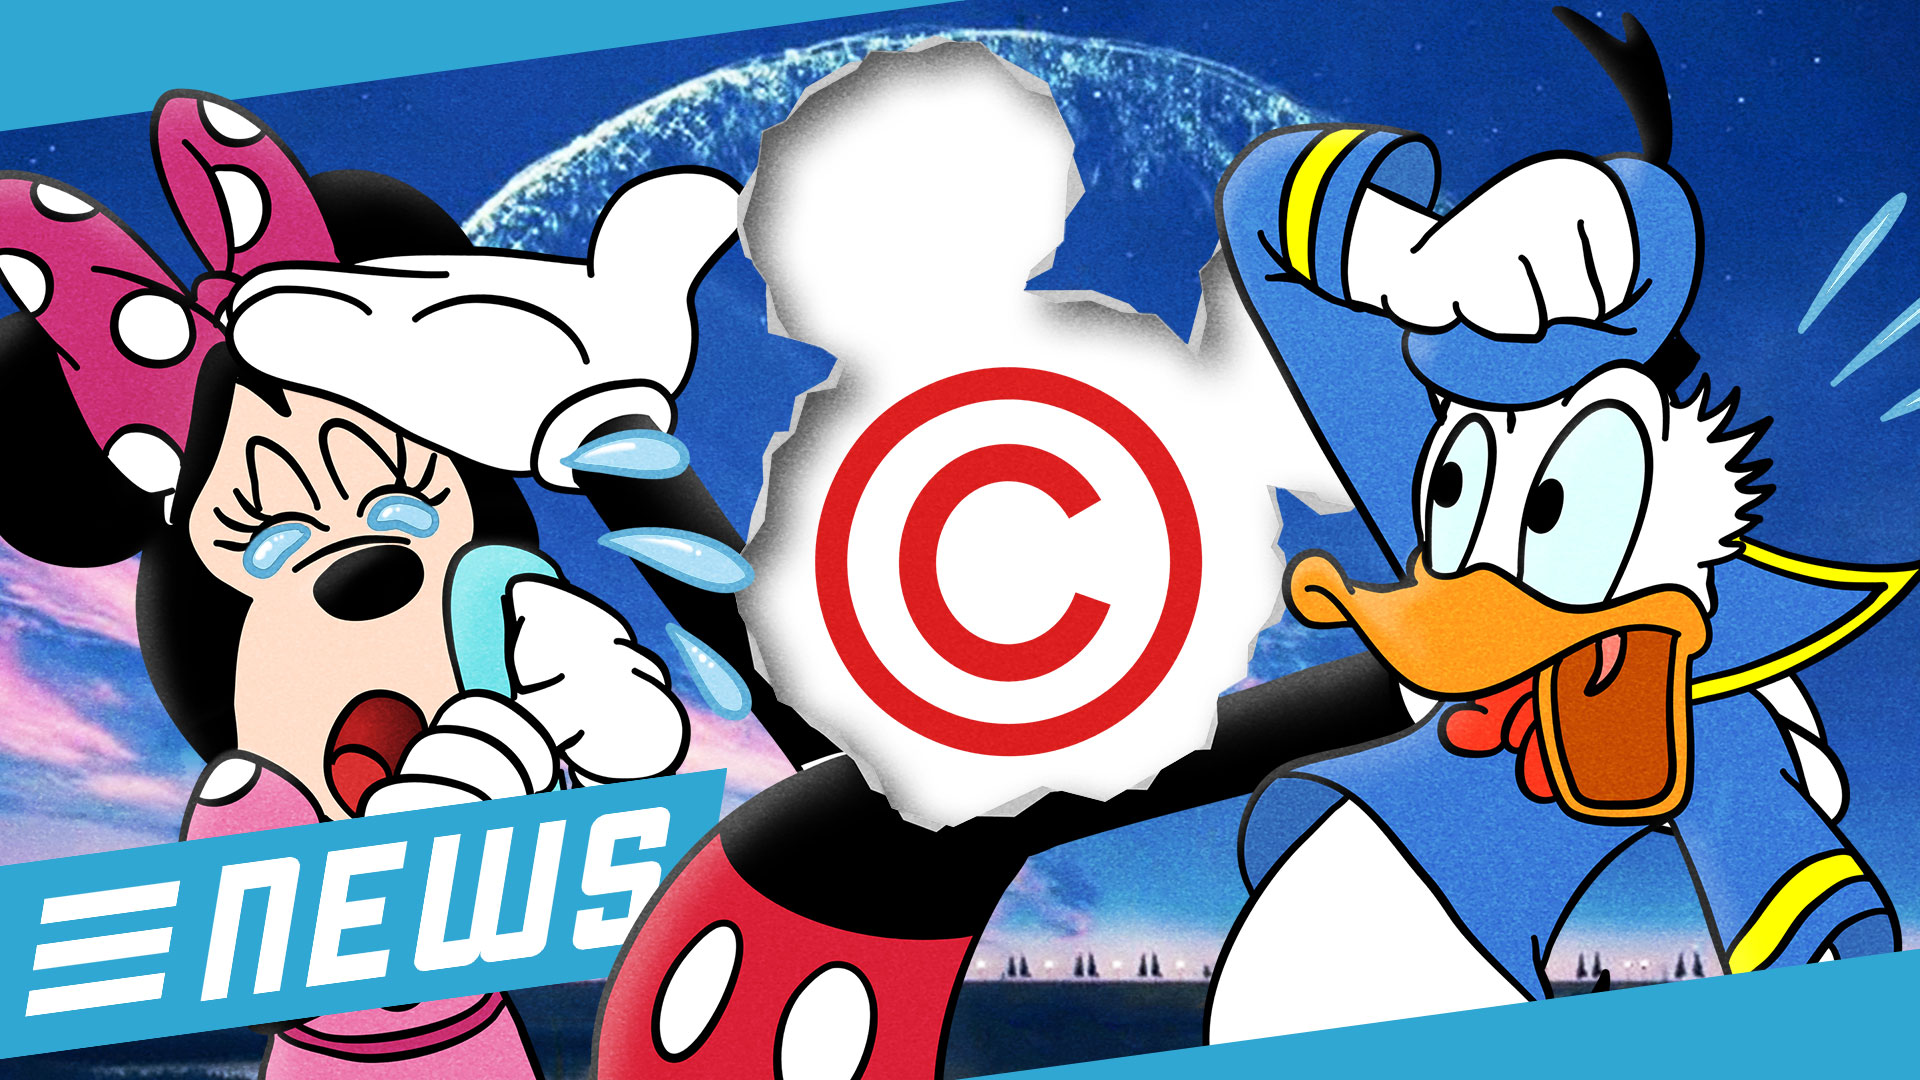 Urheberrecht: Verliert Disney Mickey Mouse? - FLIPPS News